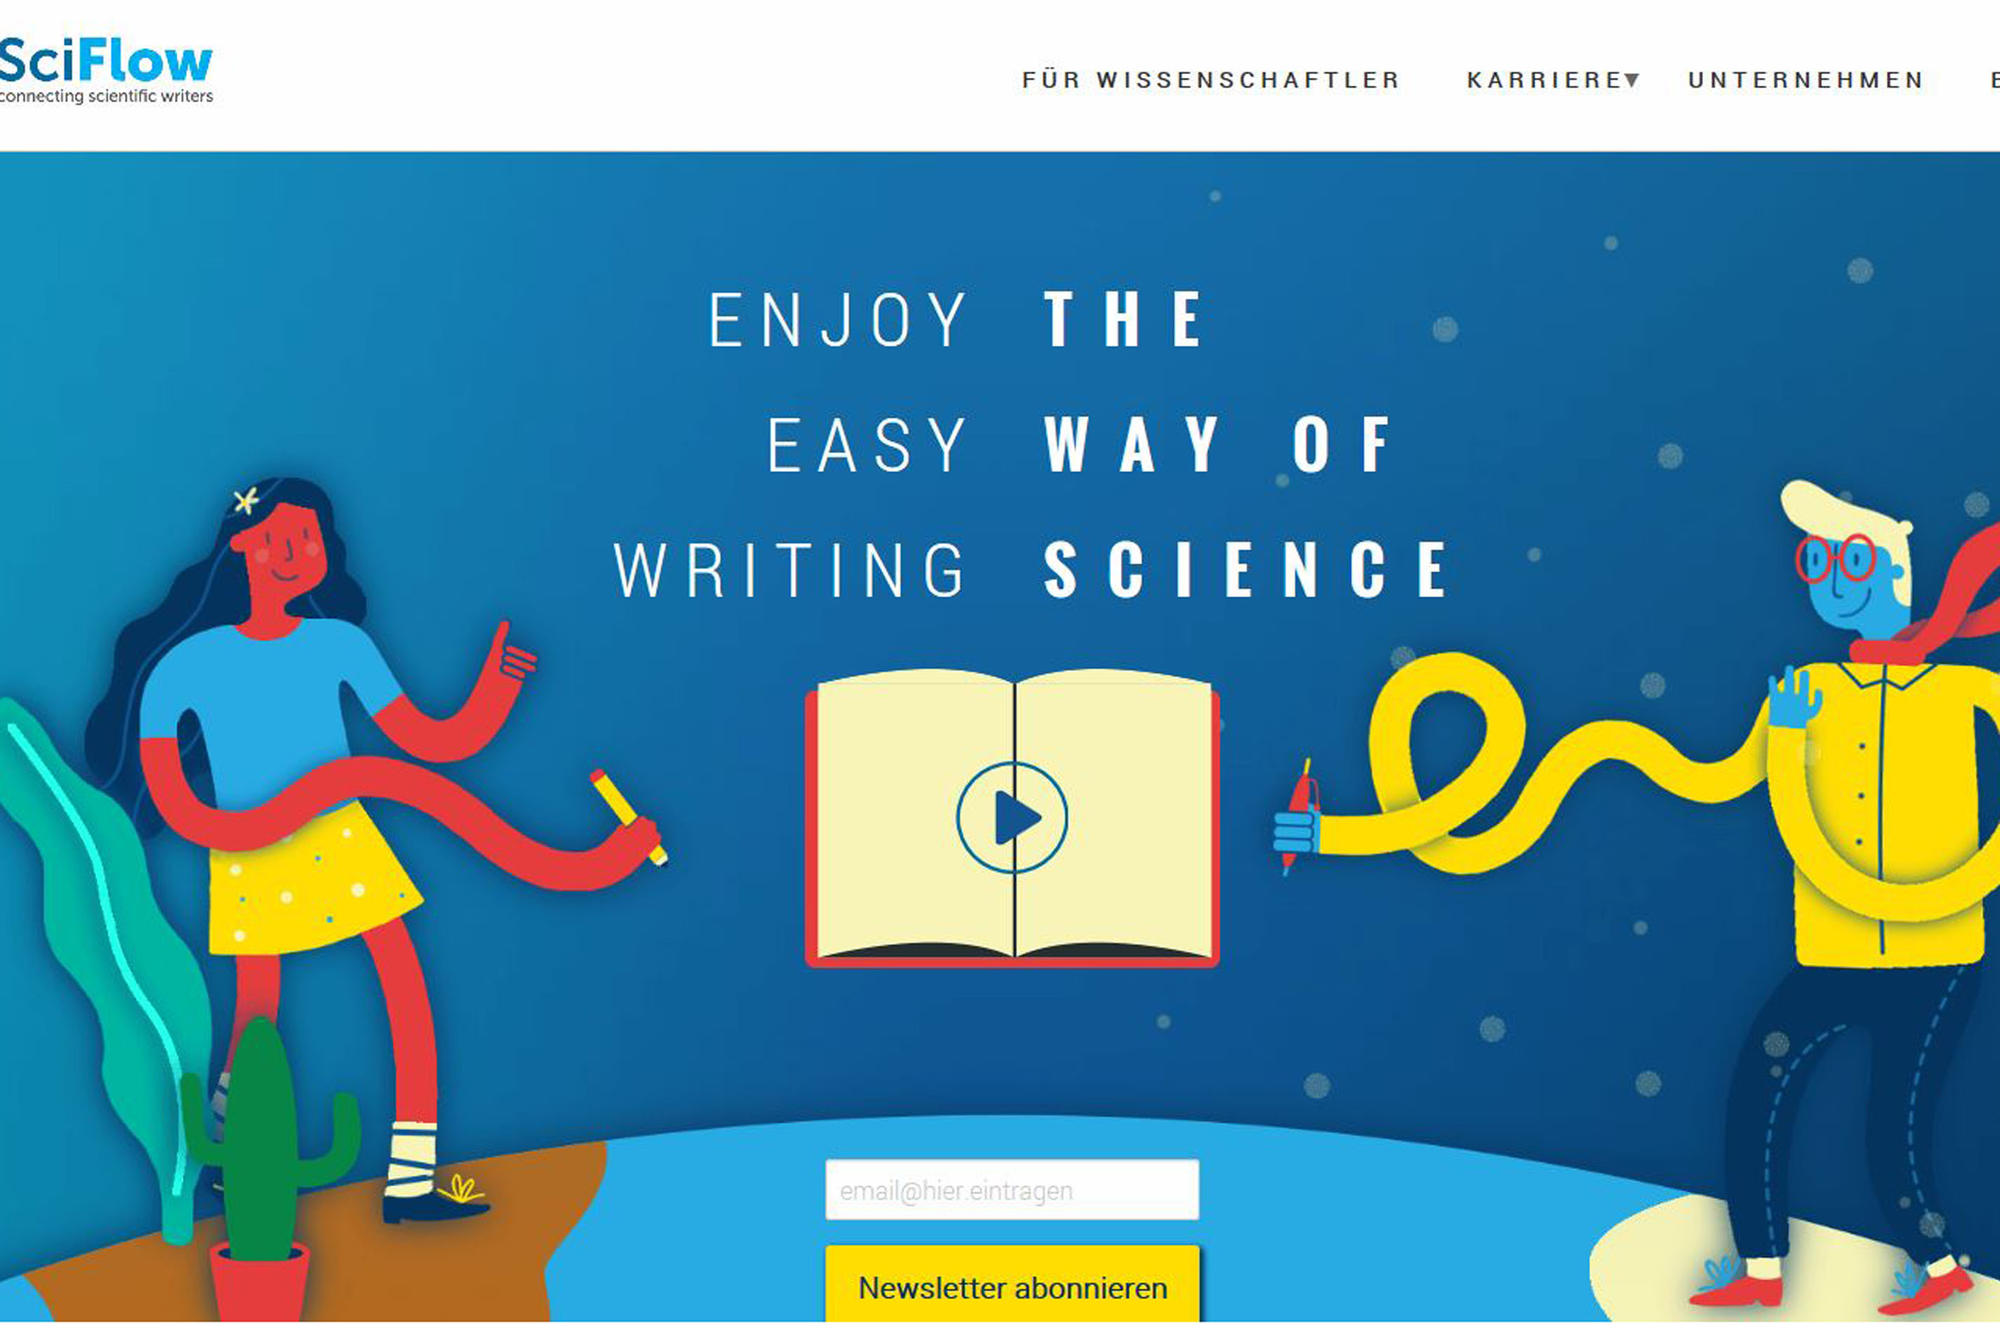 Startseite der Schreib- und Publikationsplattform SciFlow